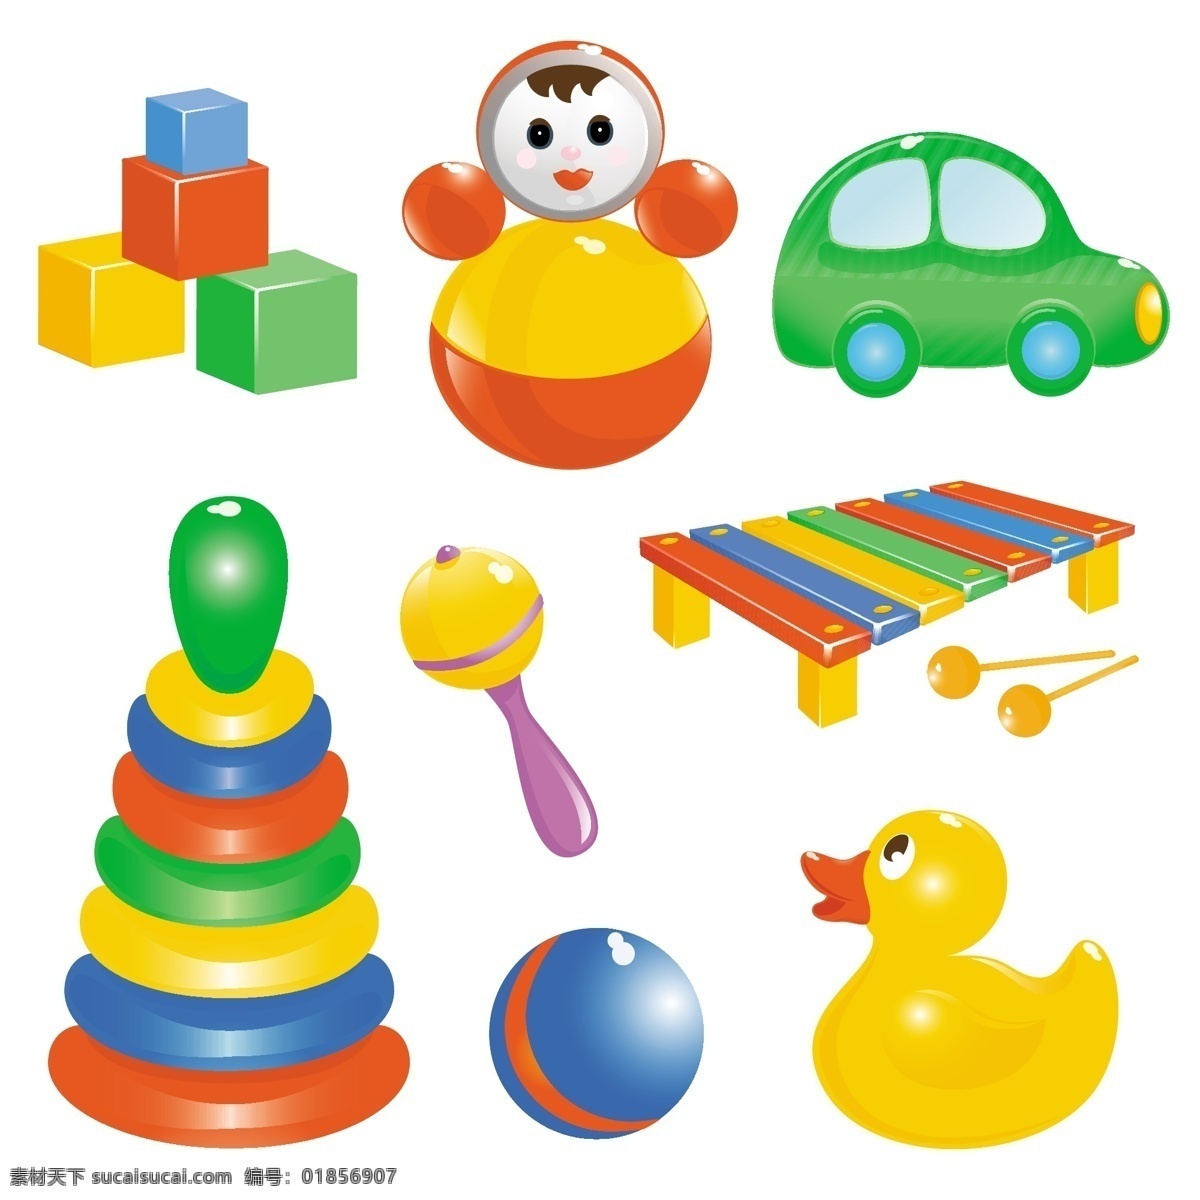 不同 婴儿玩具 组合 向量 集 宝贝 玩具 向量的生活 psd宝贝 矢量图 日常生活